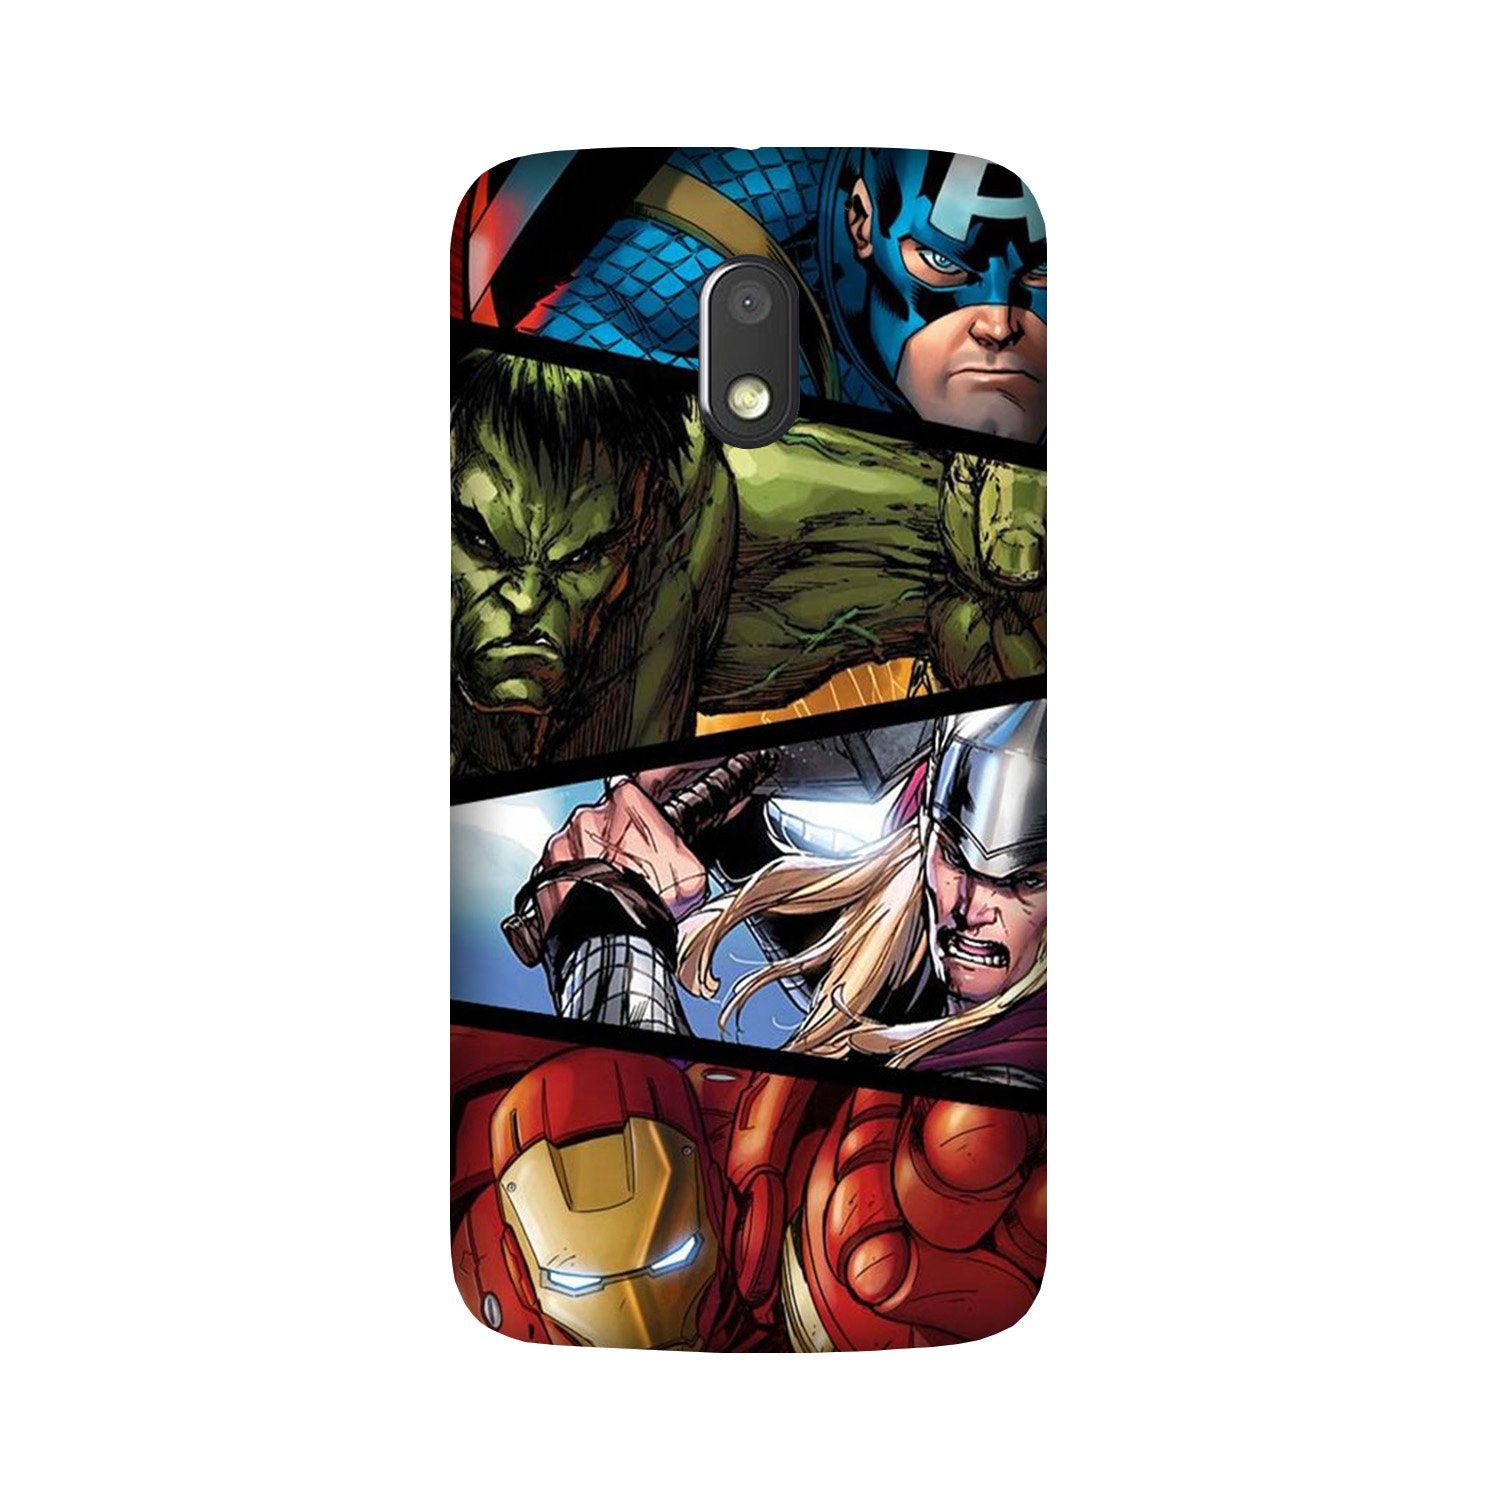 Avengers Superhero Case for Moto G4 Play(Design - 124)